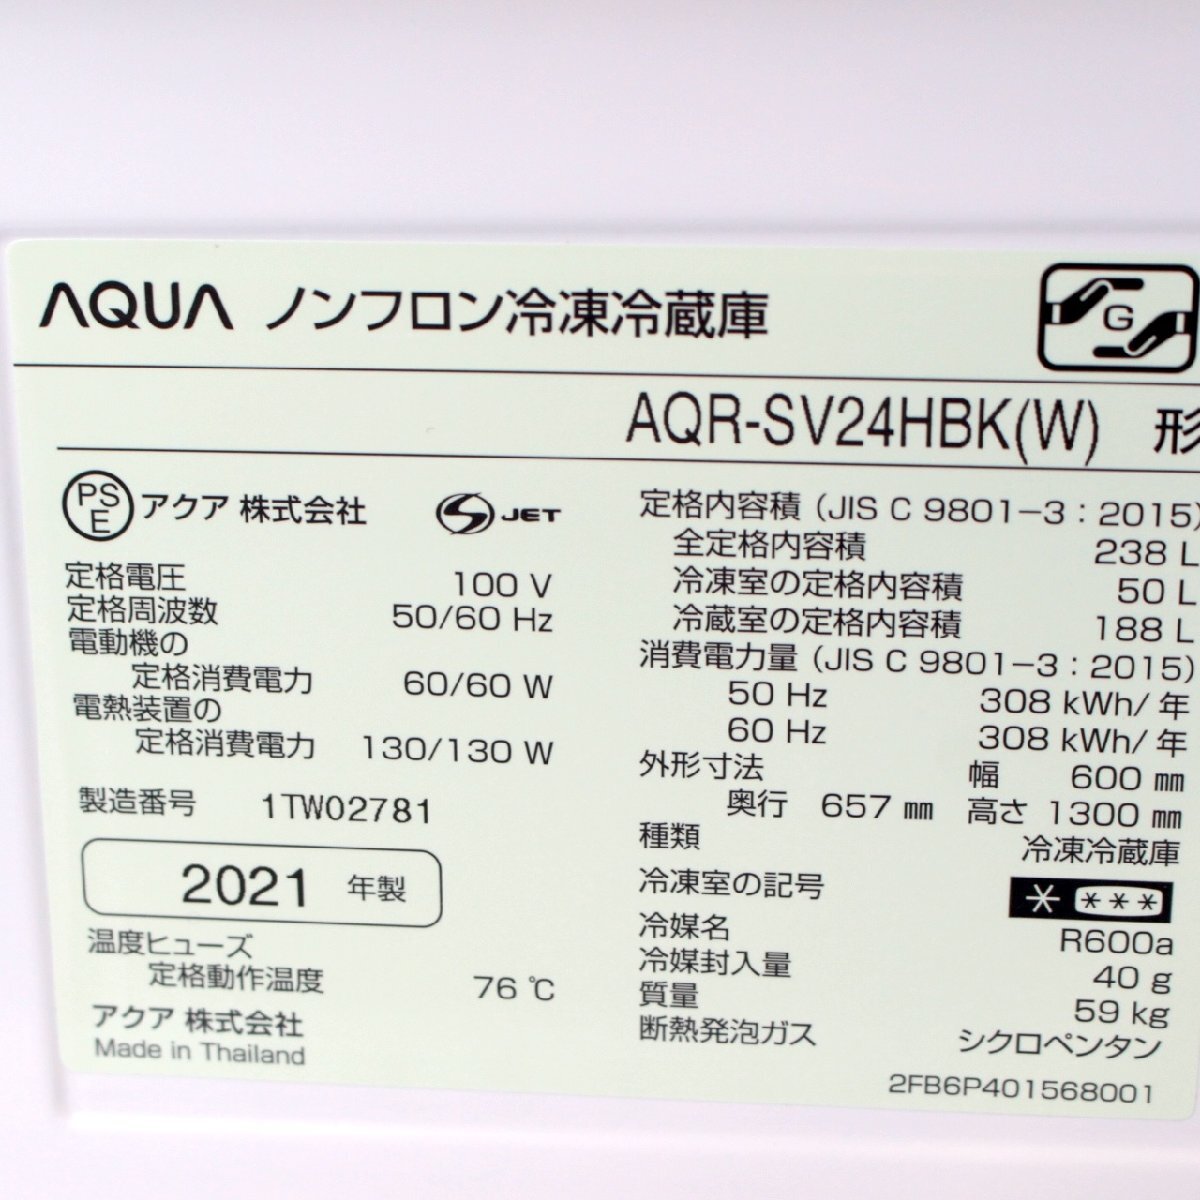 T988) アクア 3ドア 238L 2021年製 AQR-SV24HBK アンティークホワイト 右開き 幅60cm 自動製氷 旬鮮チルド AQUA ノンフロン冷凍冷蔵庫_画像6